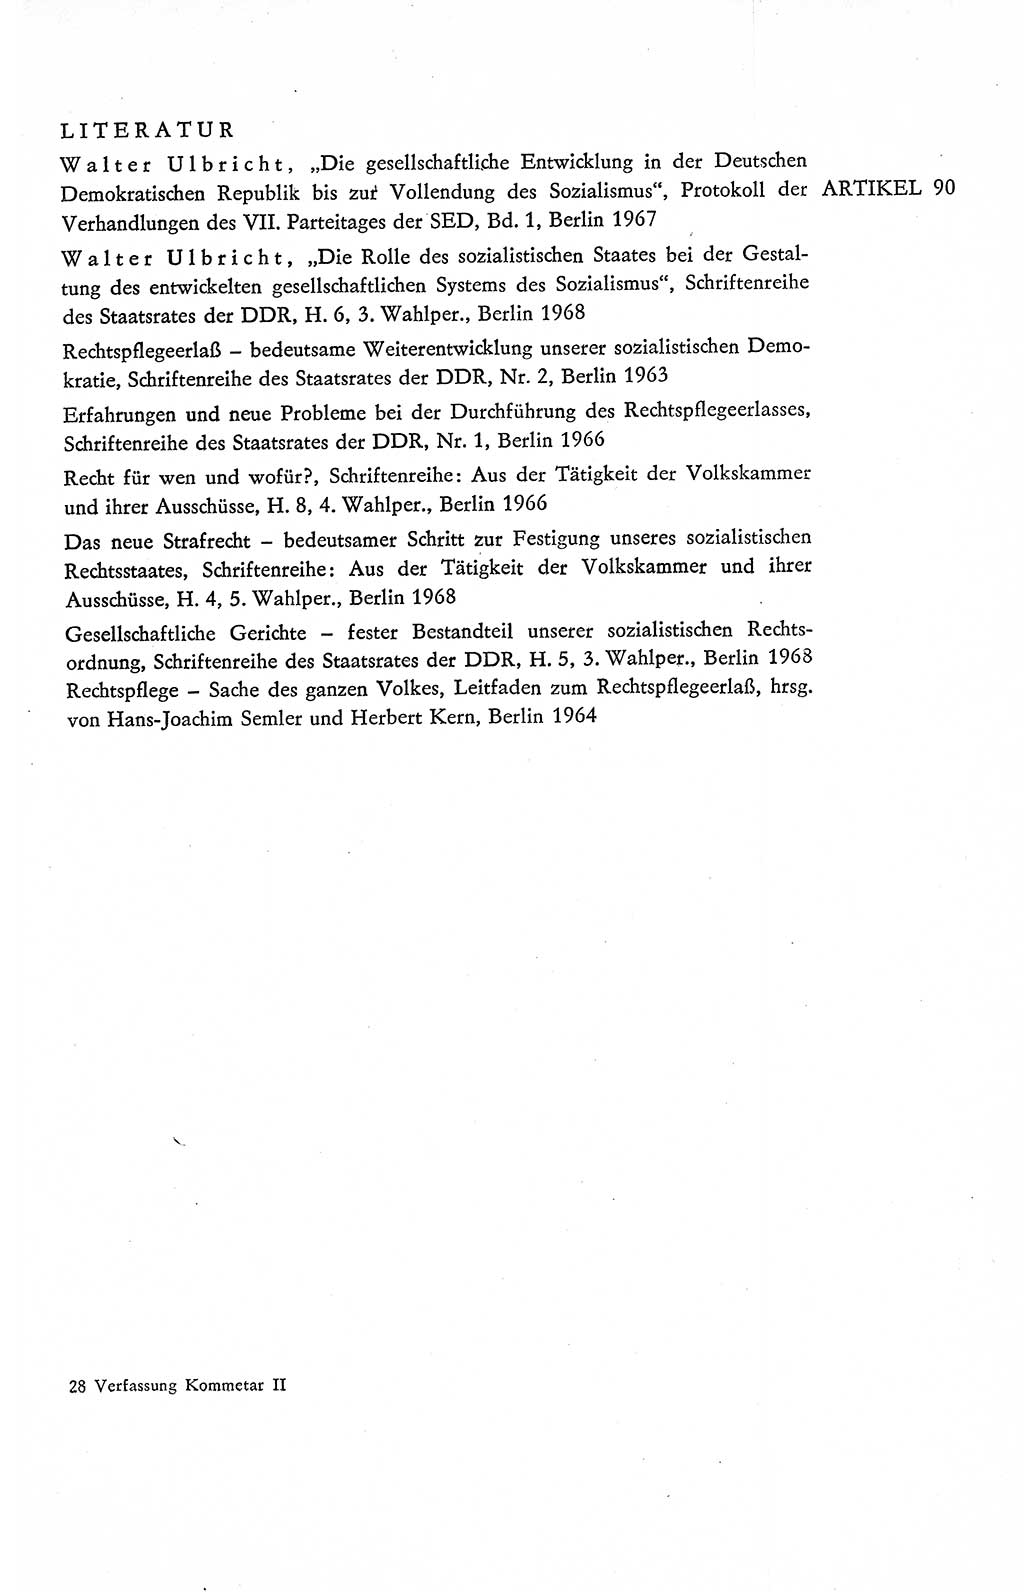 Verfassung der Deutschen Demokratischen Republik (DDR), Dokumente, Kommentar 1969, Band 2, Seite 433 (Verf. DDR Dok. Komm. 1969, Bd. 2, S. 433)